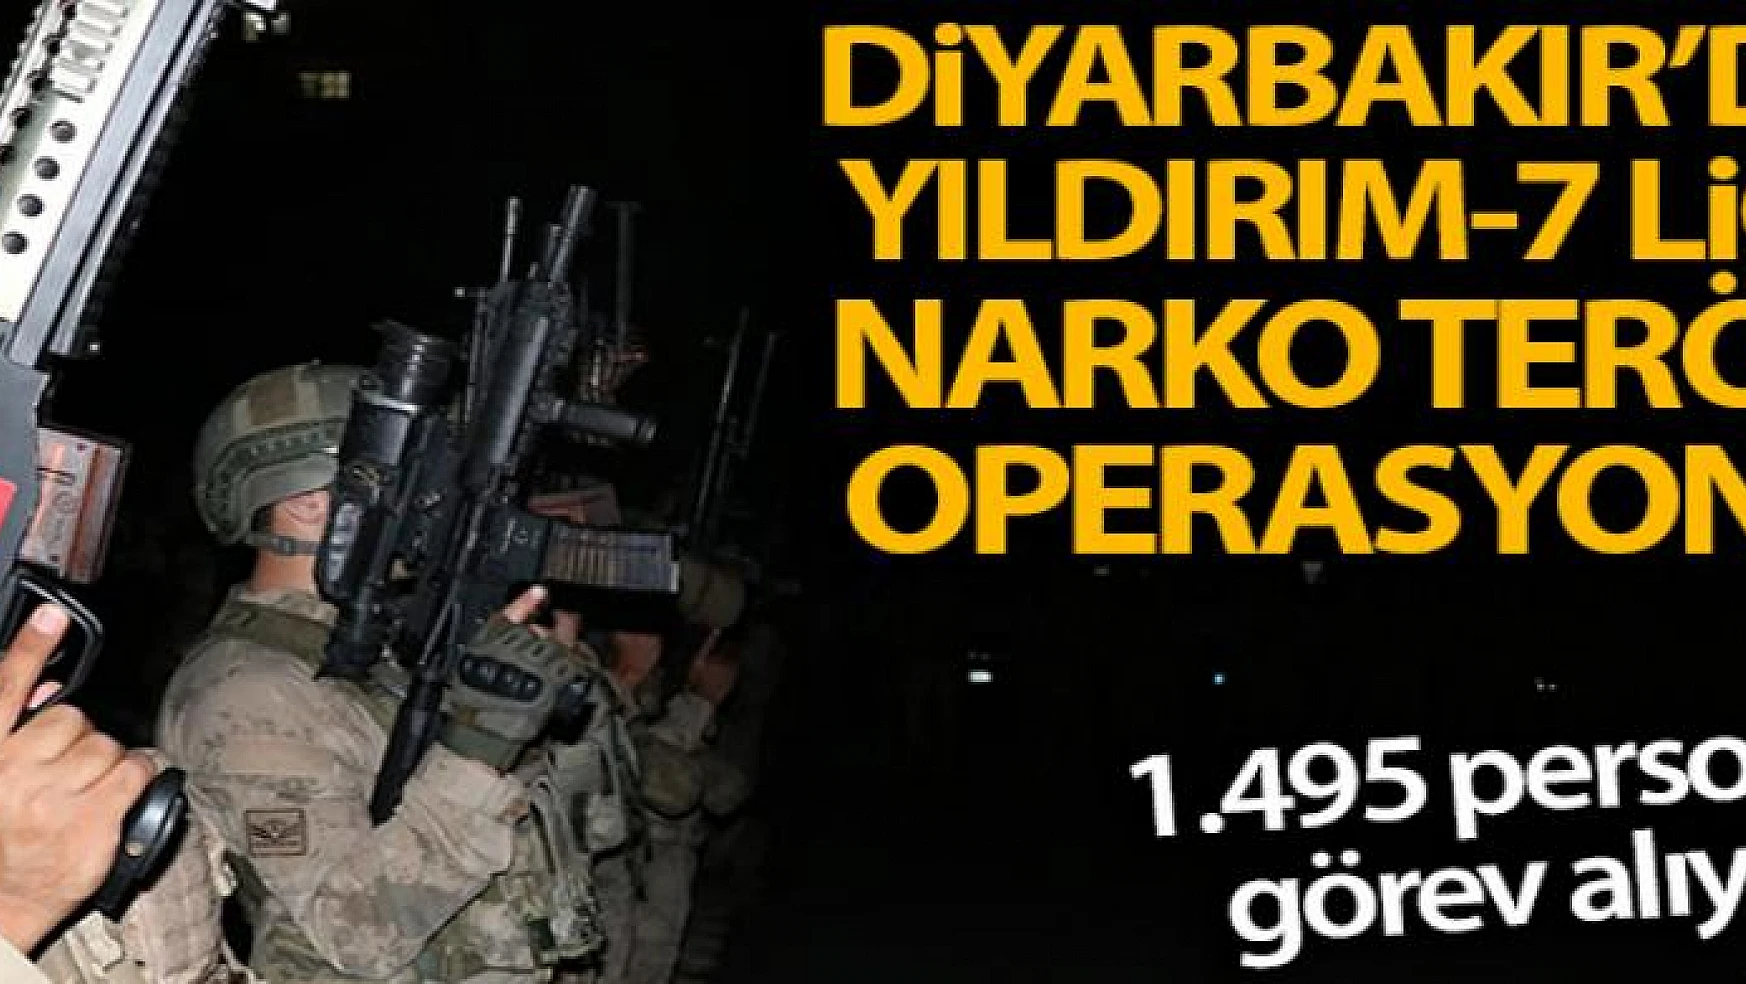 Diyarbakır'da Yıldırım-7 Lice Narko-Terör Operasyonu başlatıldı